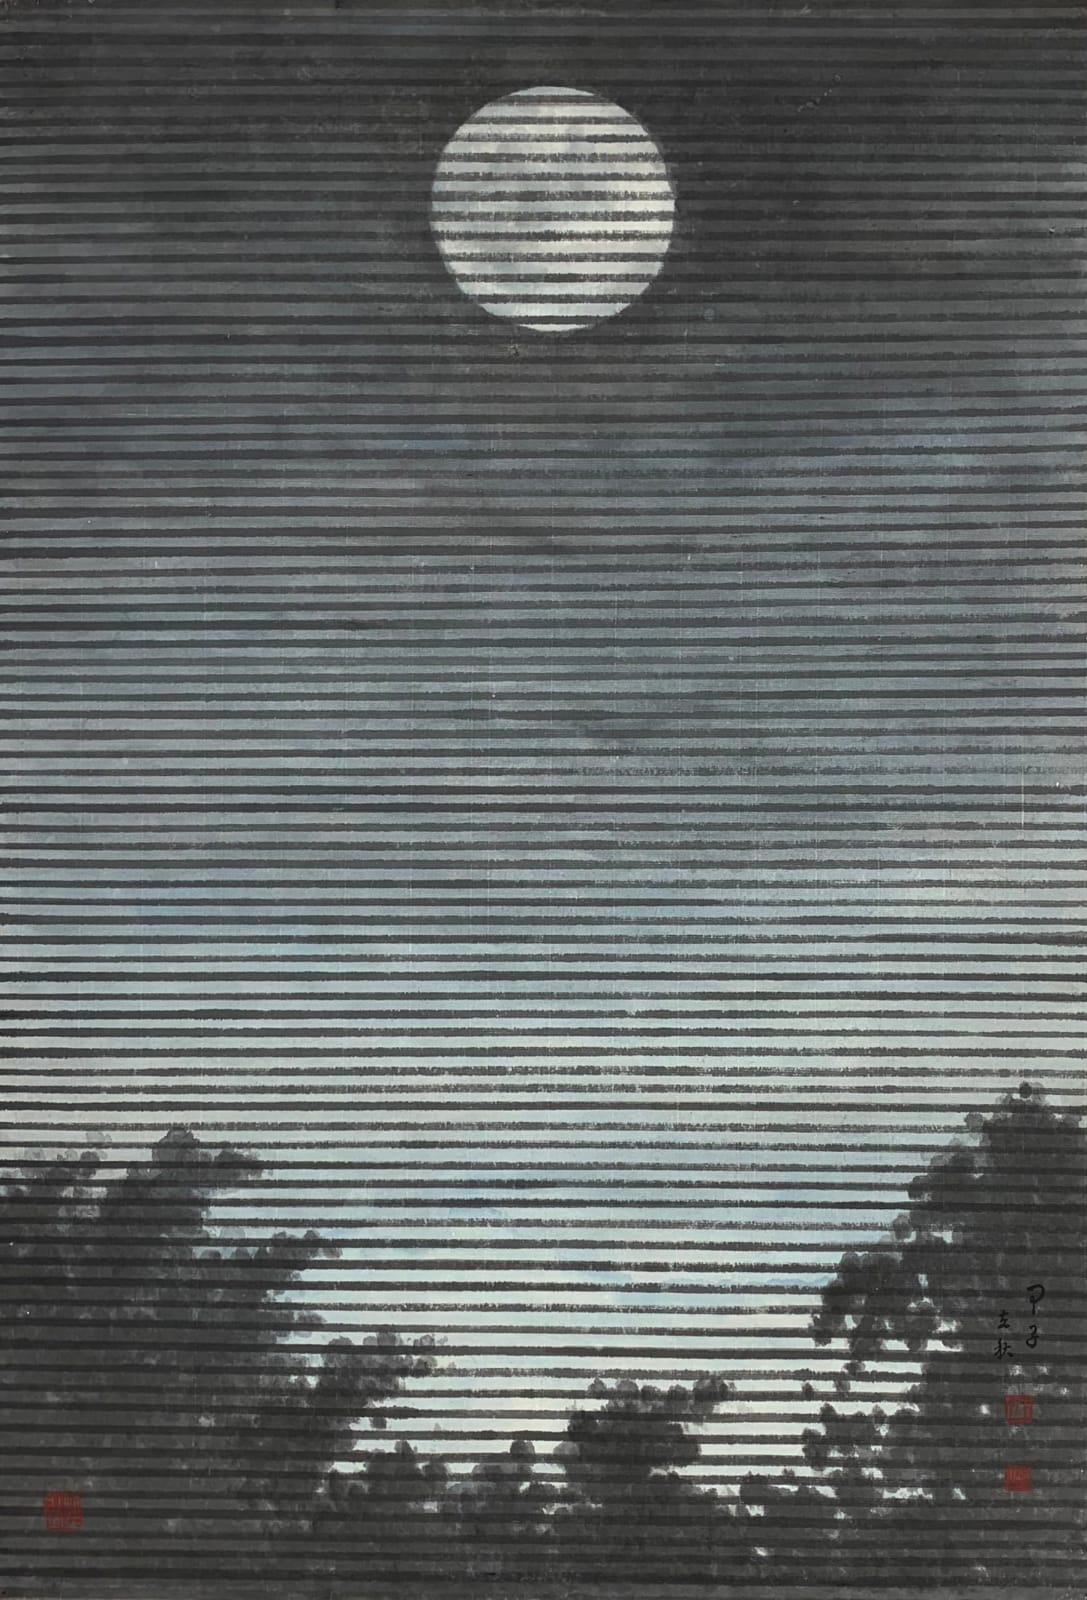 Wong King Seng 王勁生, The Moon 窓前月, 1984